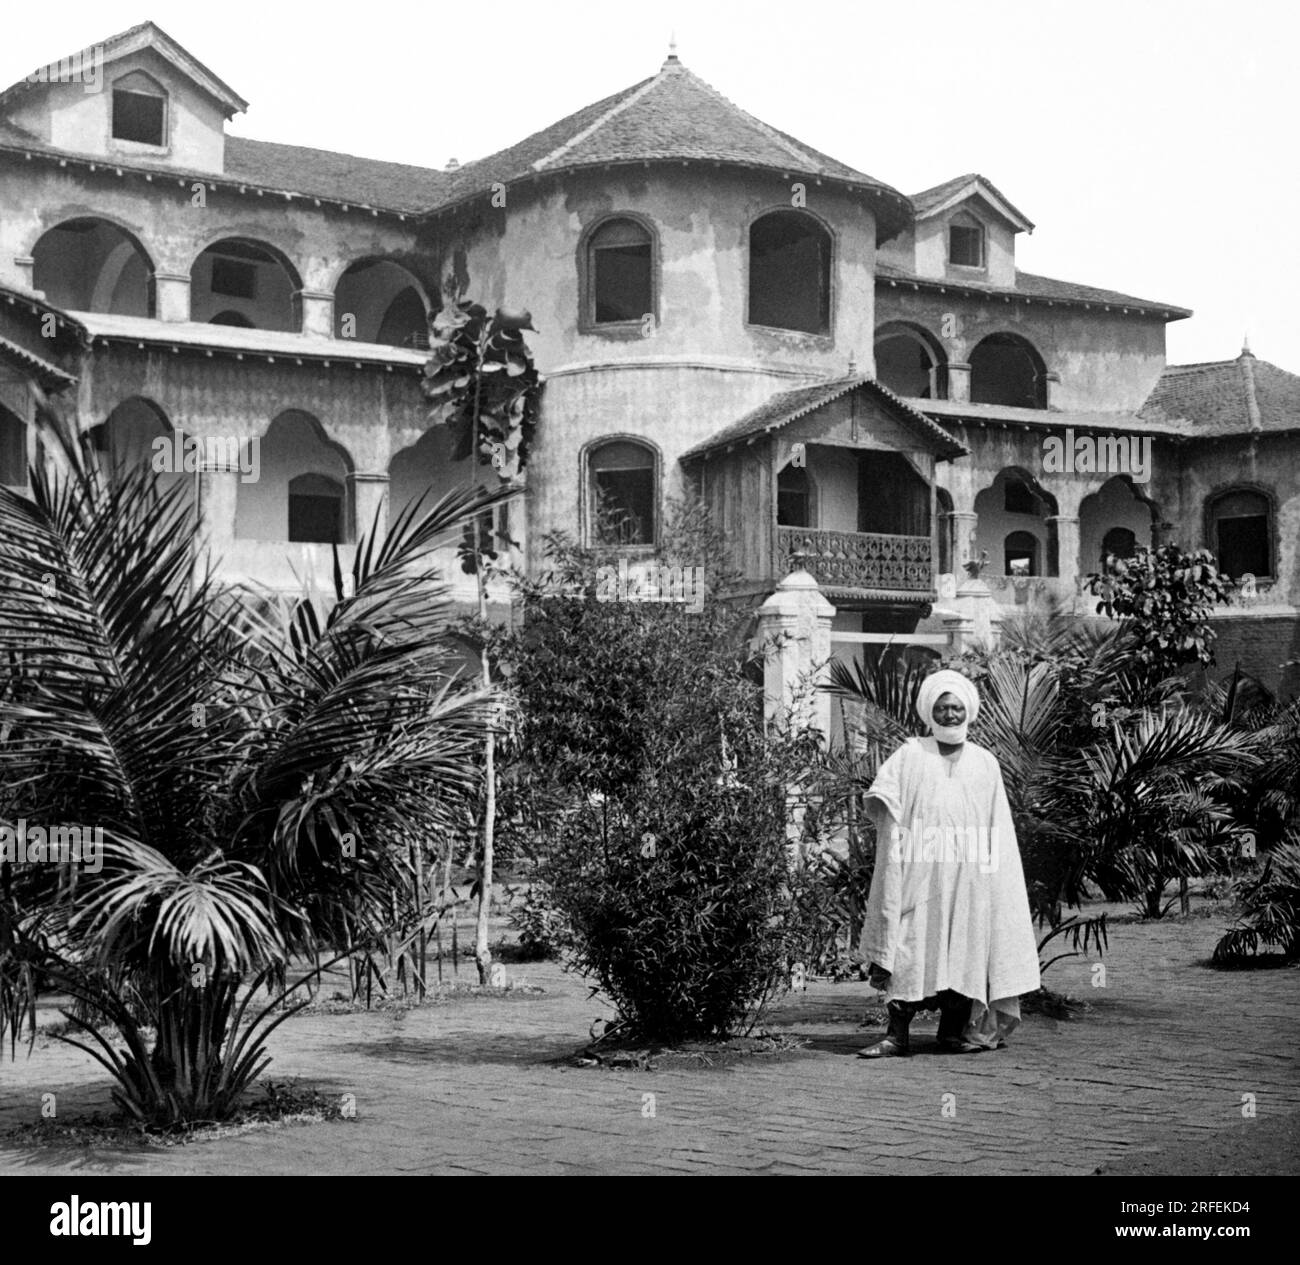 Le palais royal a Foumban (Cameroun), construit en 1917, avec le roi Njoya ( 1876-1933) se trouvant dans le jardin. Photographie Debut XXeme siecle. Banque D'Images